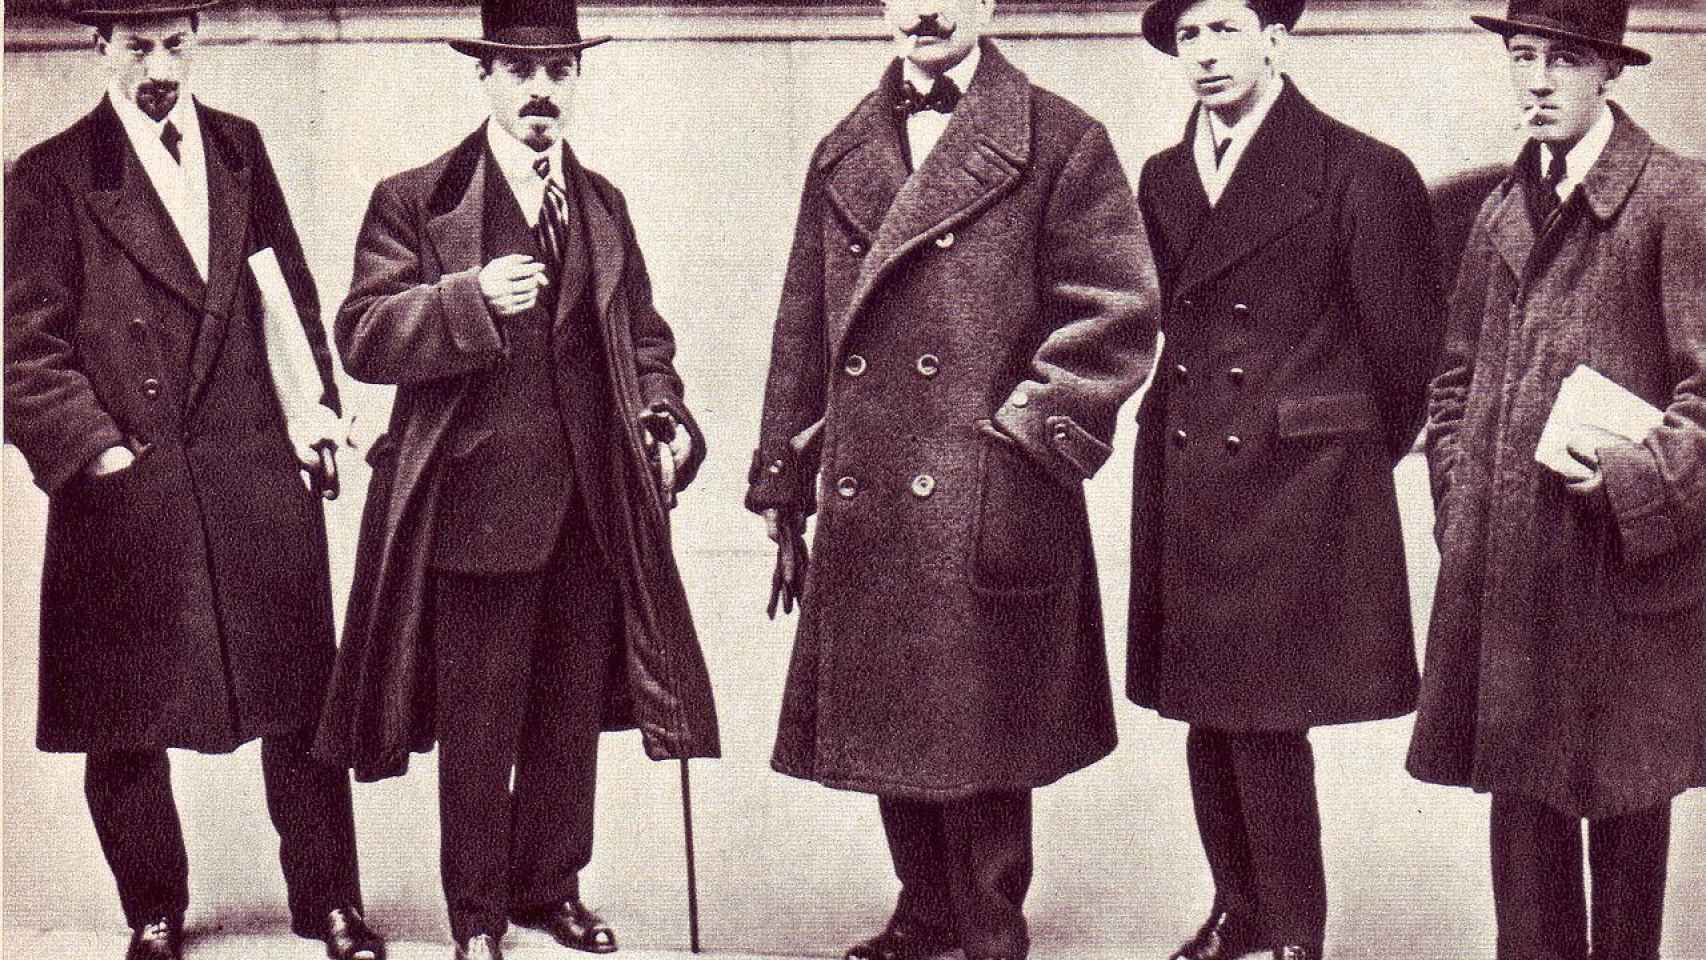 Los futuristas Russolo, Carrà, Marinetti (en el centro de la imagen), Boccioni y Severini (1916).